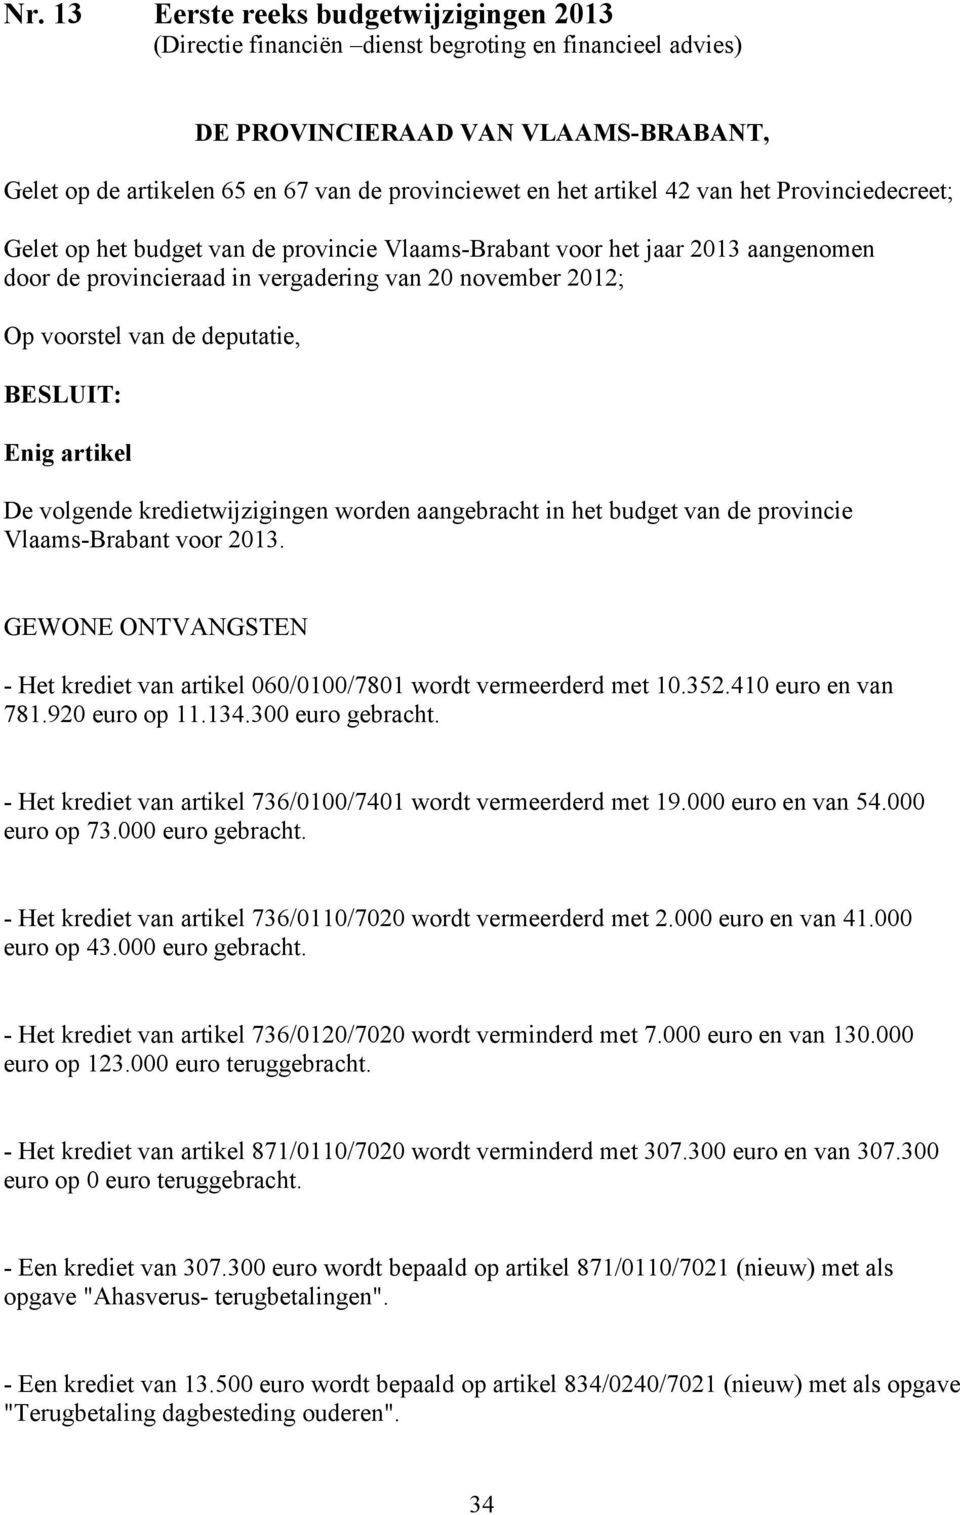 deputatie, BESLUIT: Enig artikel De volgende kredietwijzigingen worden aangebracht in het budget van de provincie Vlaams-Brabant voor 2013.